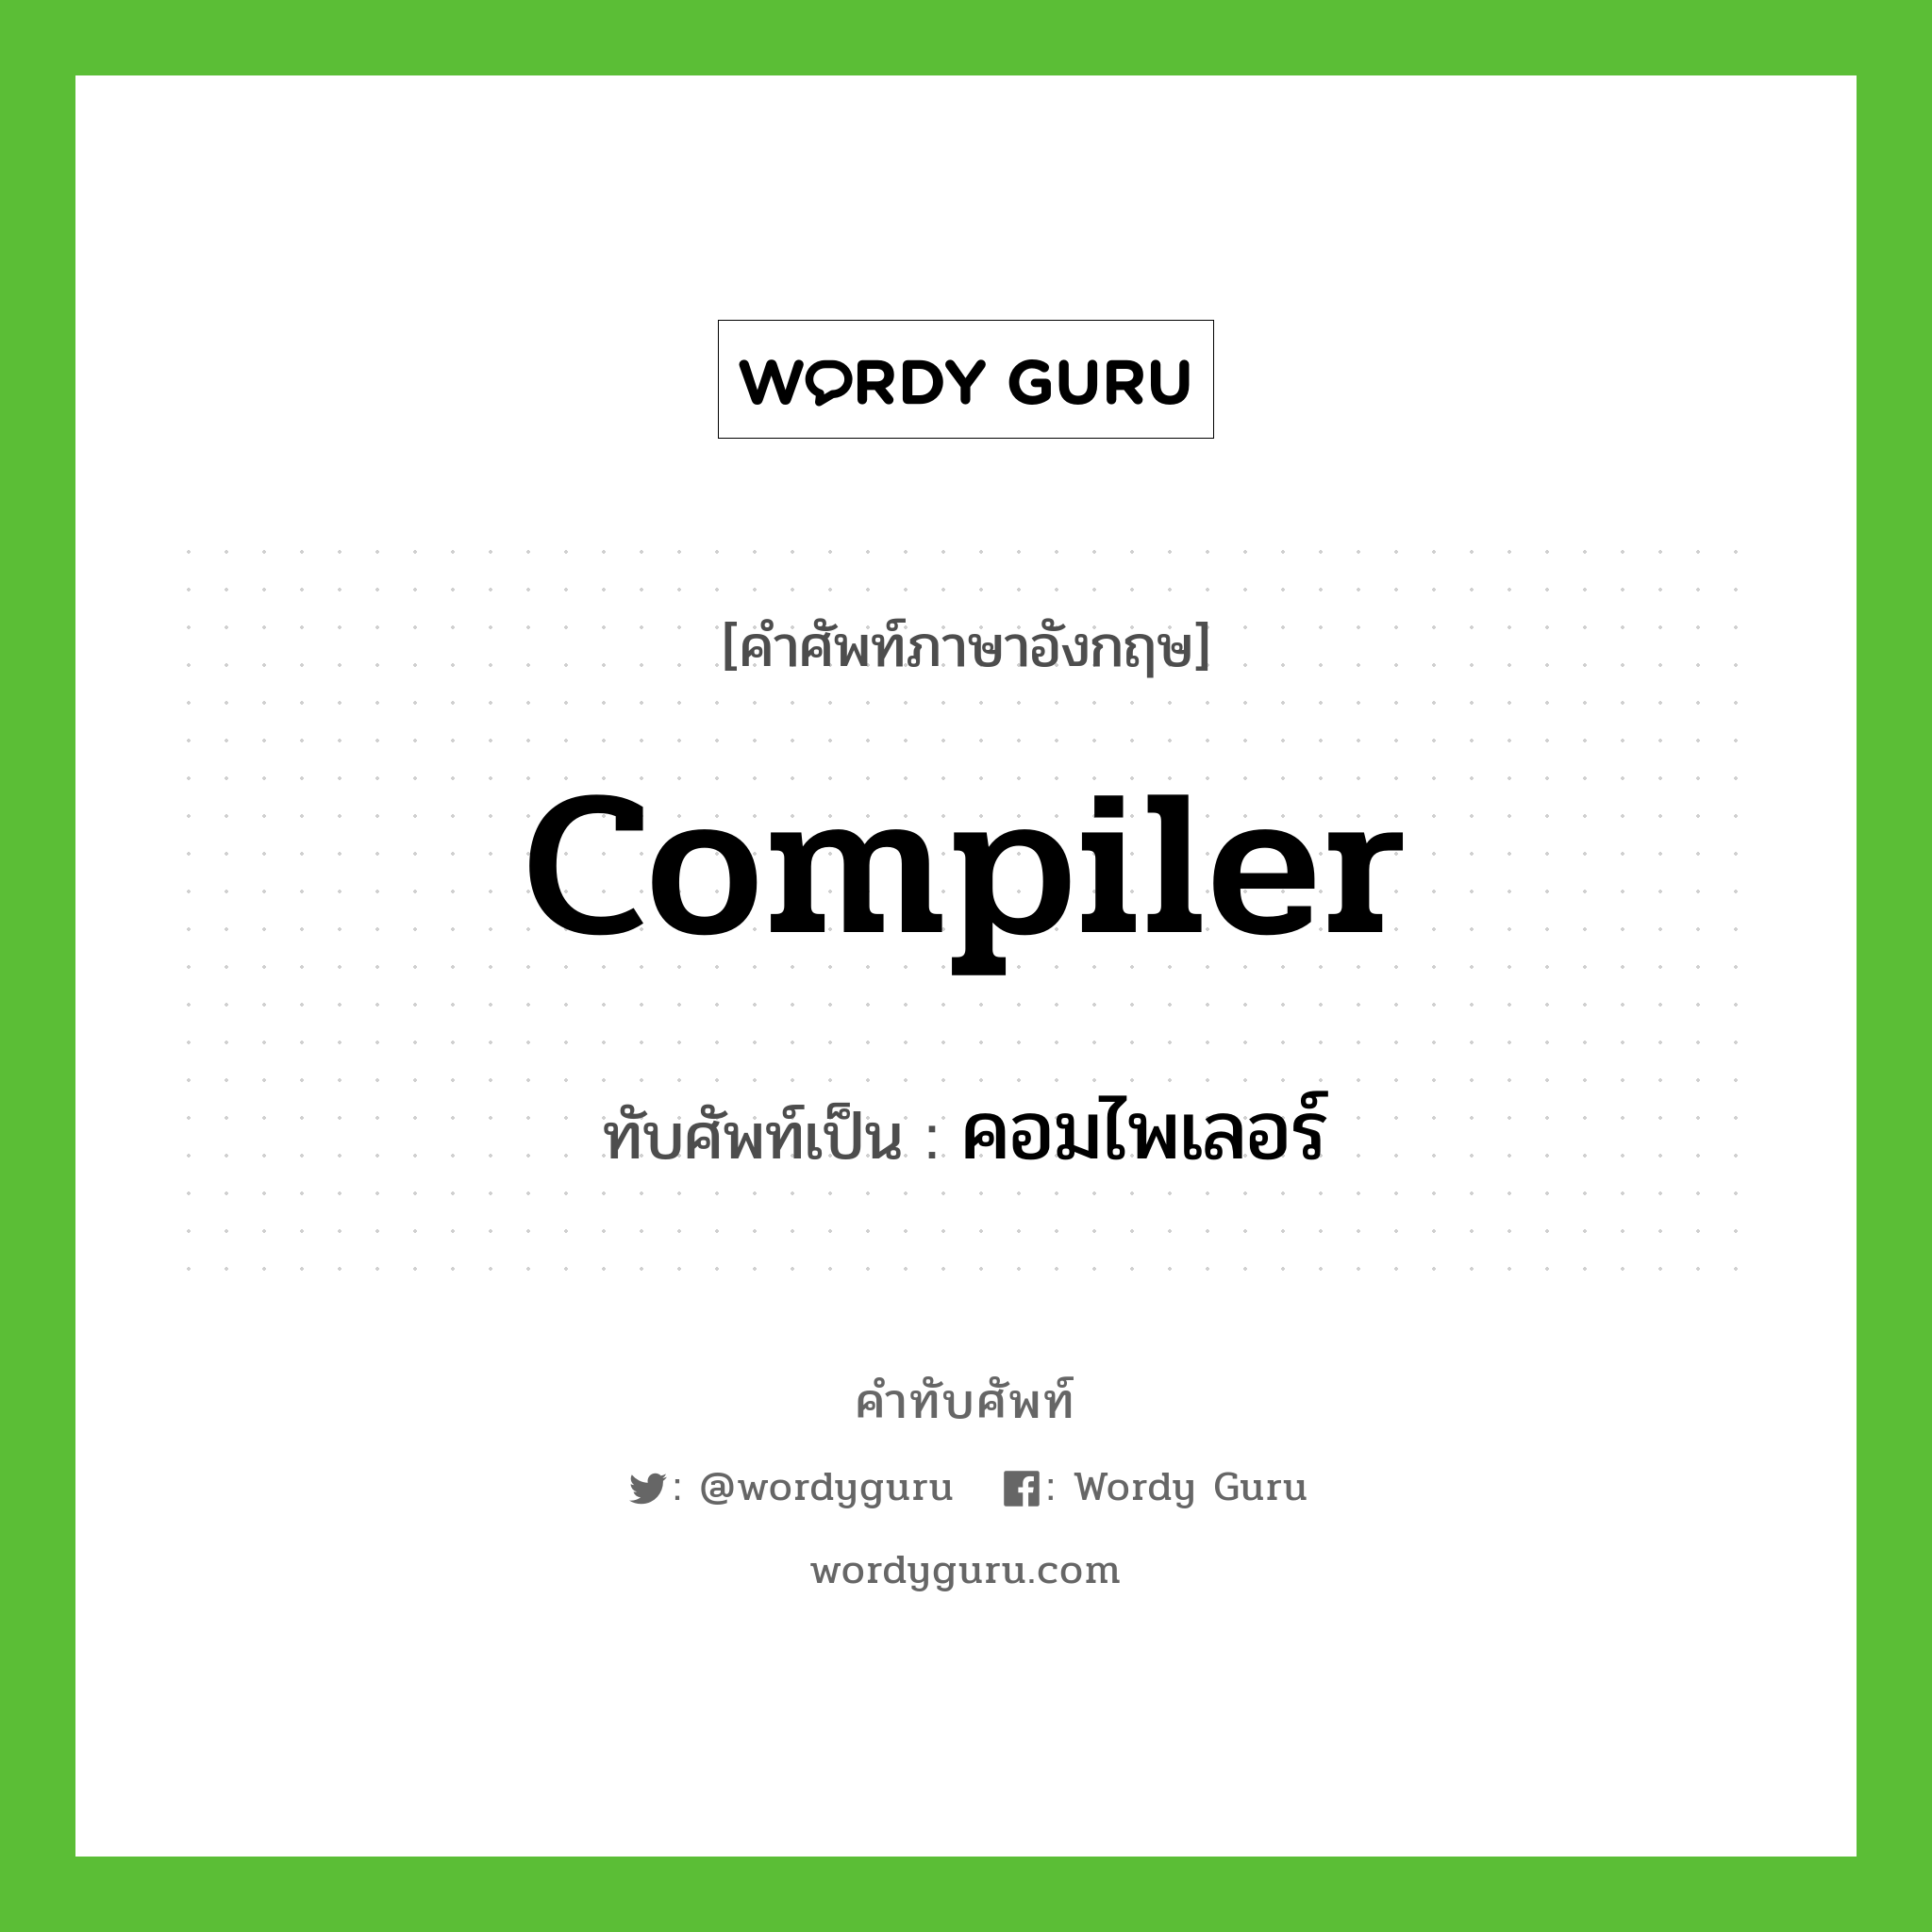 คอมไพเลอร์ เขียนอย่างไร?, คำศัพท์ภาษาอังกฤษ คอมไพเลอร์ ทับศัพท์เป็น compiler